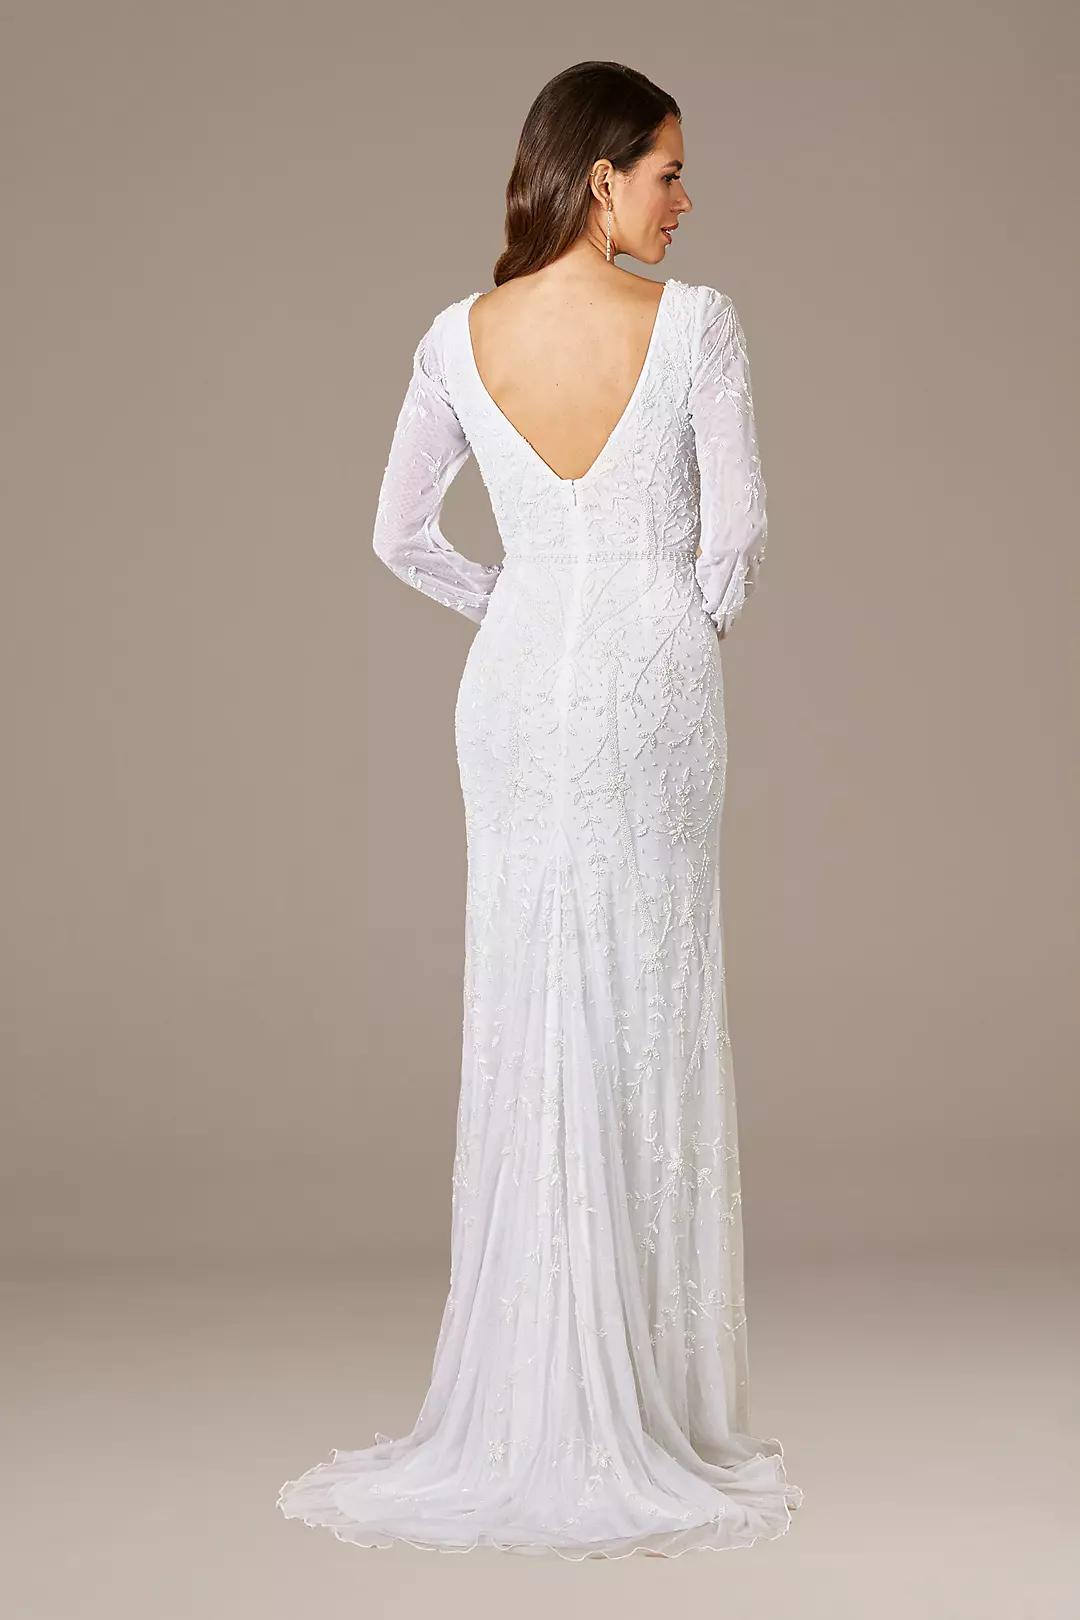 Lara Gigi Romantic Long Sleeve Wedding Dress | David's Bridal